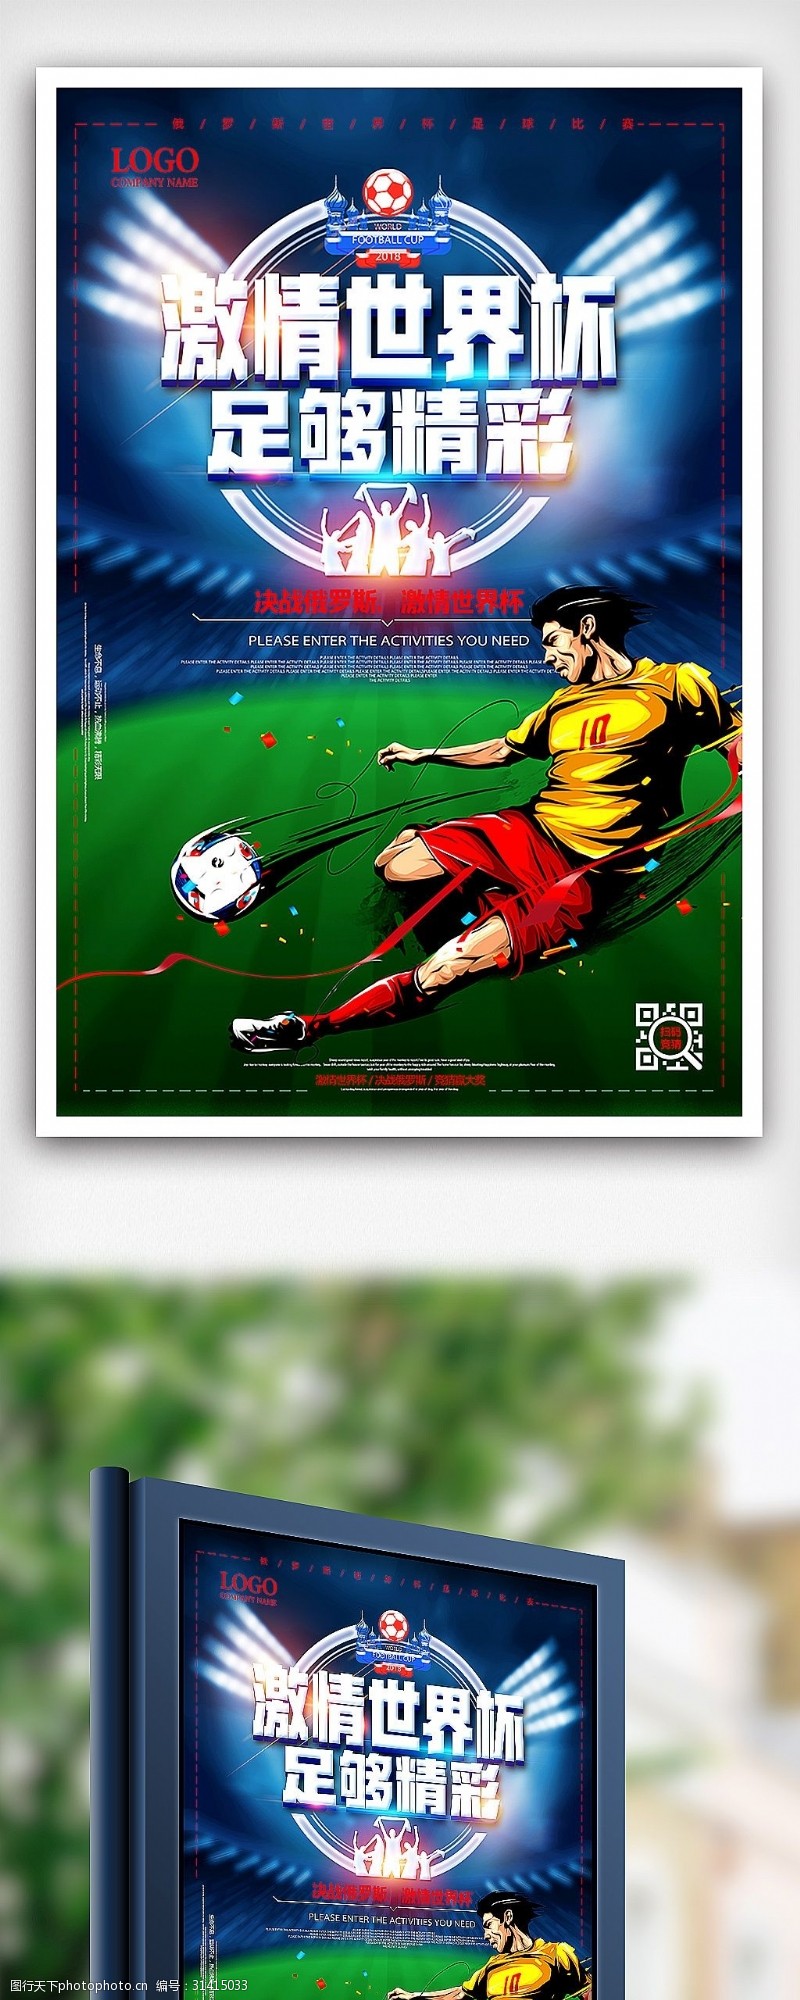 激情世界杯2018俄罗斯世界杯激情足球赛体育海报